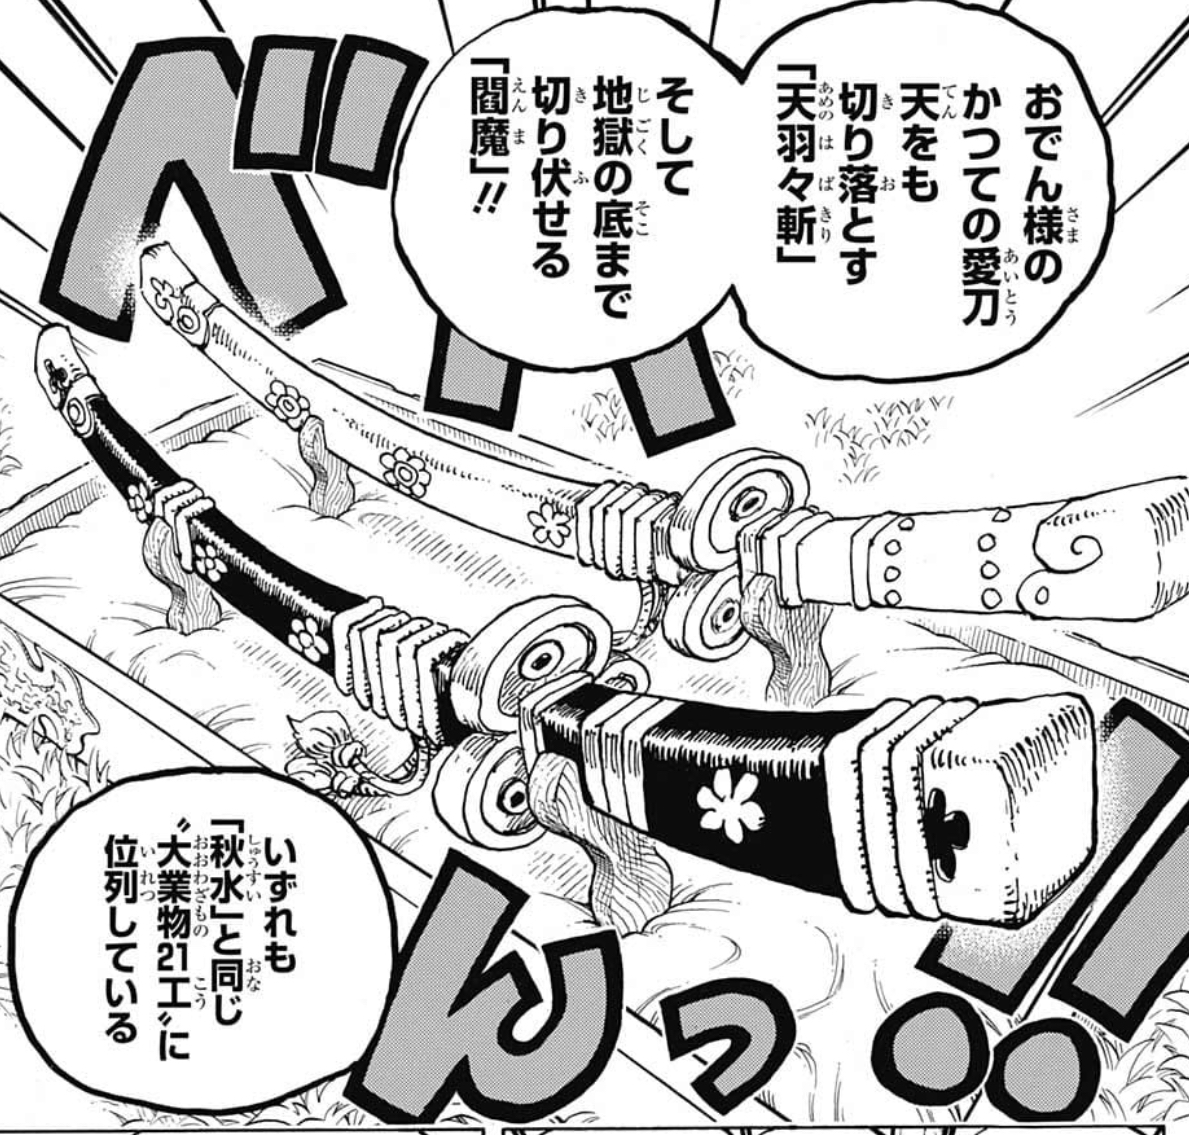 One Piece ワンピース に登場する刀 剣まとめ Renote リノート